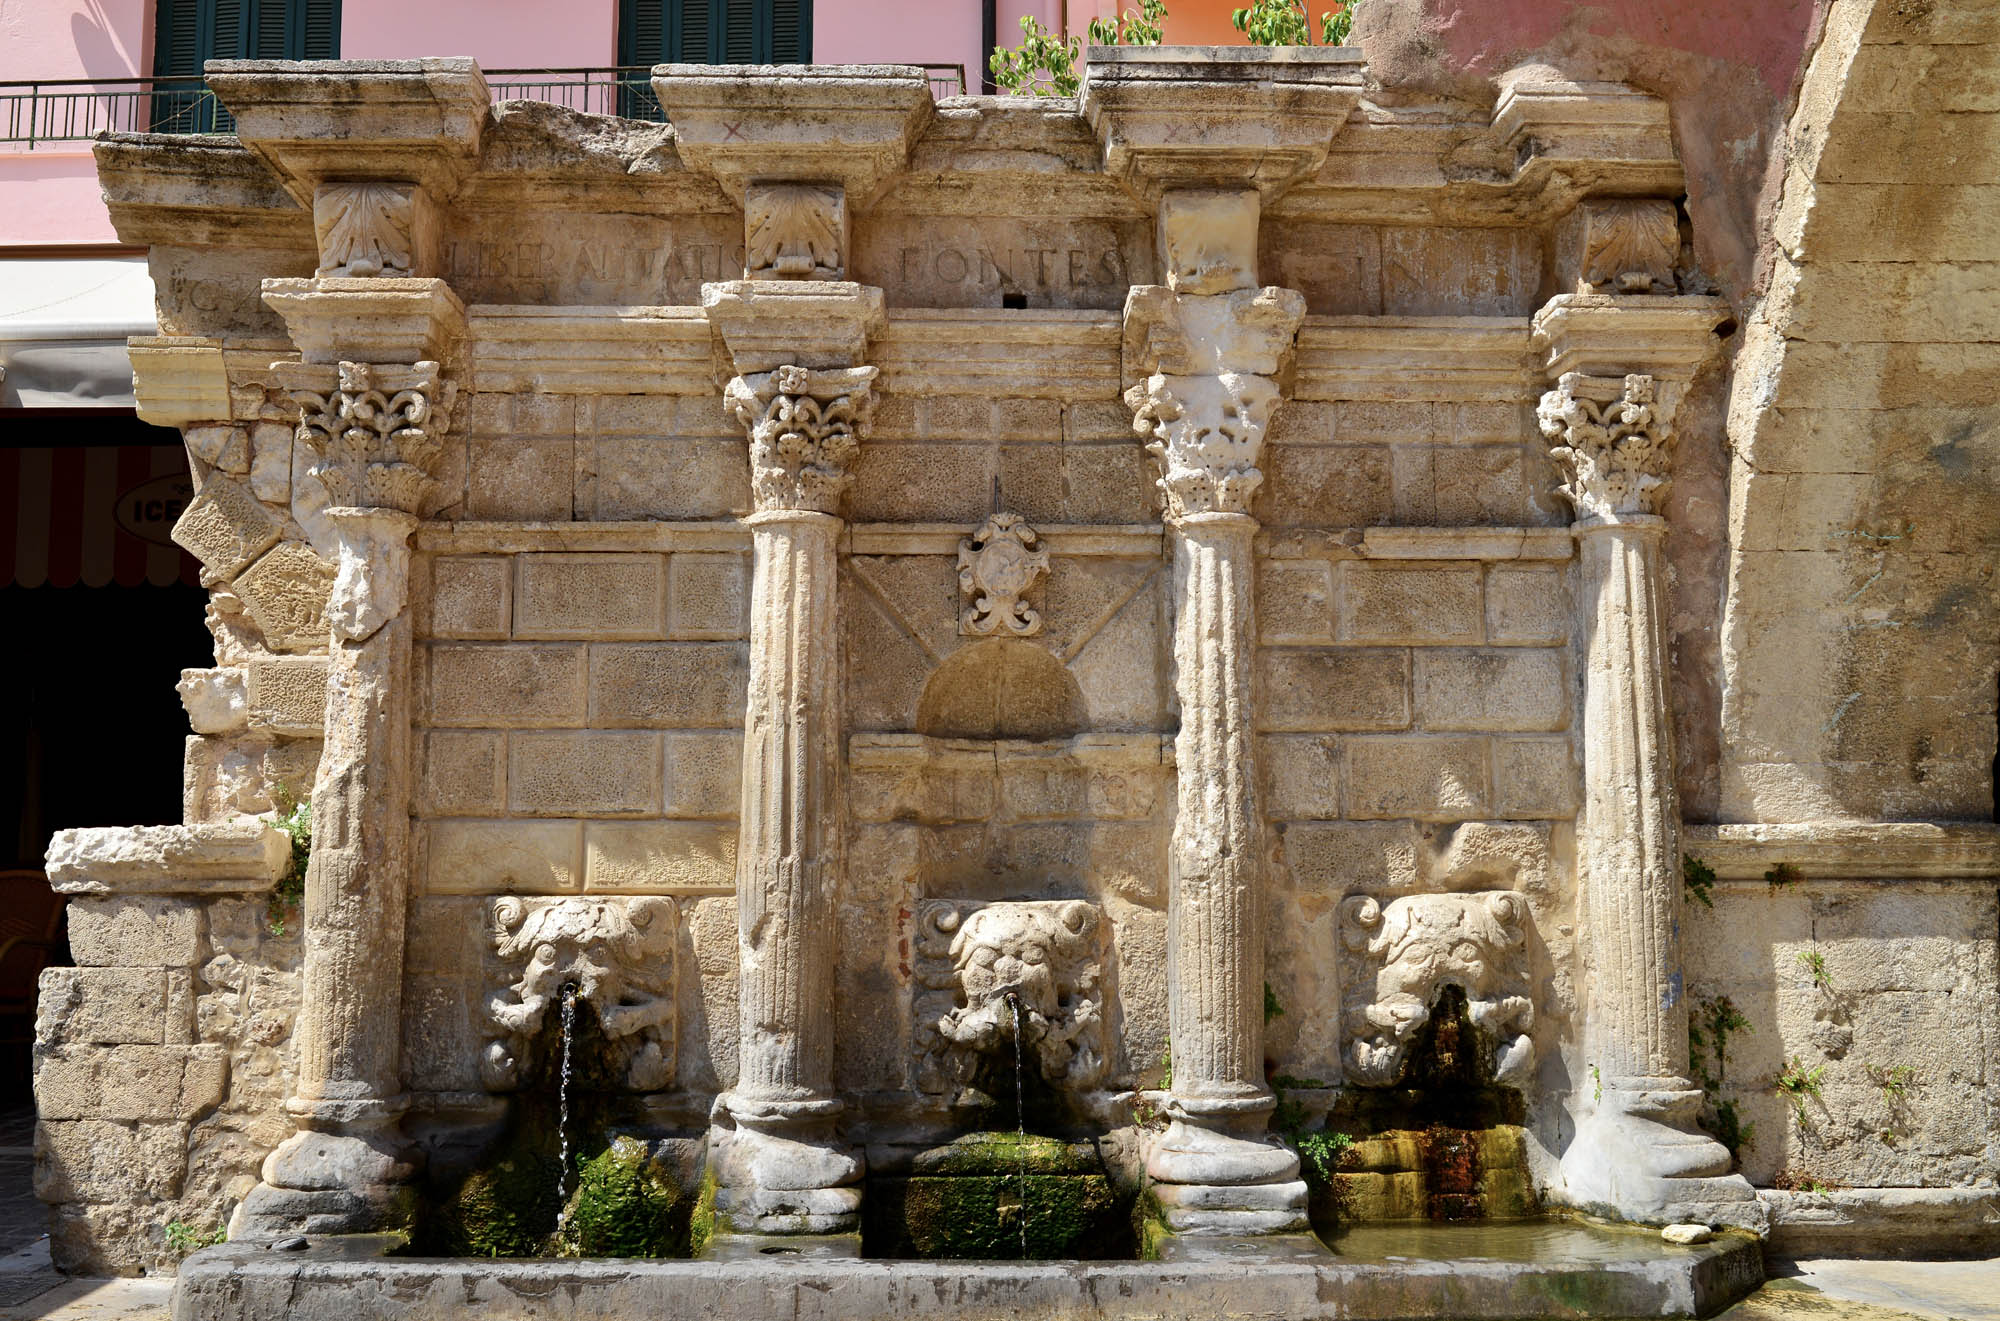 słynna fontanna rimnodi w mieście rethymno, widok od przodu na lwie głowy